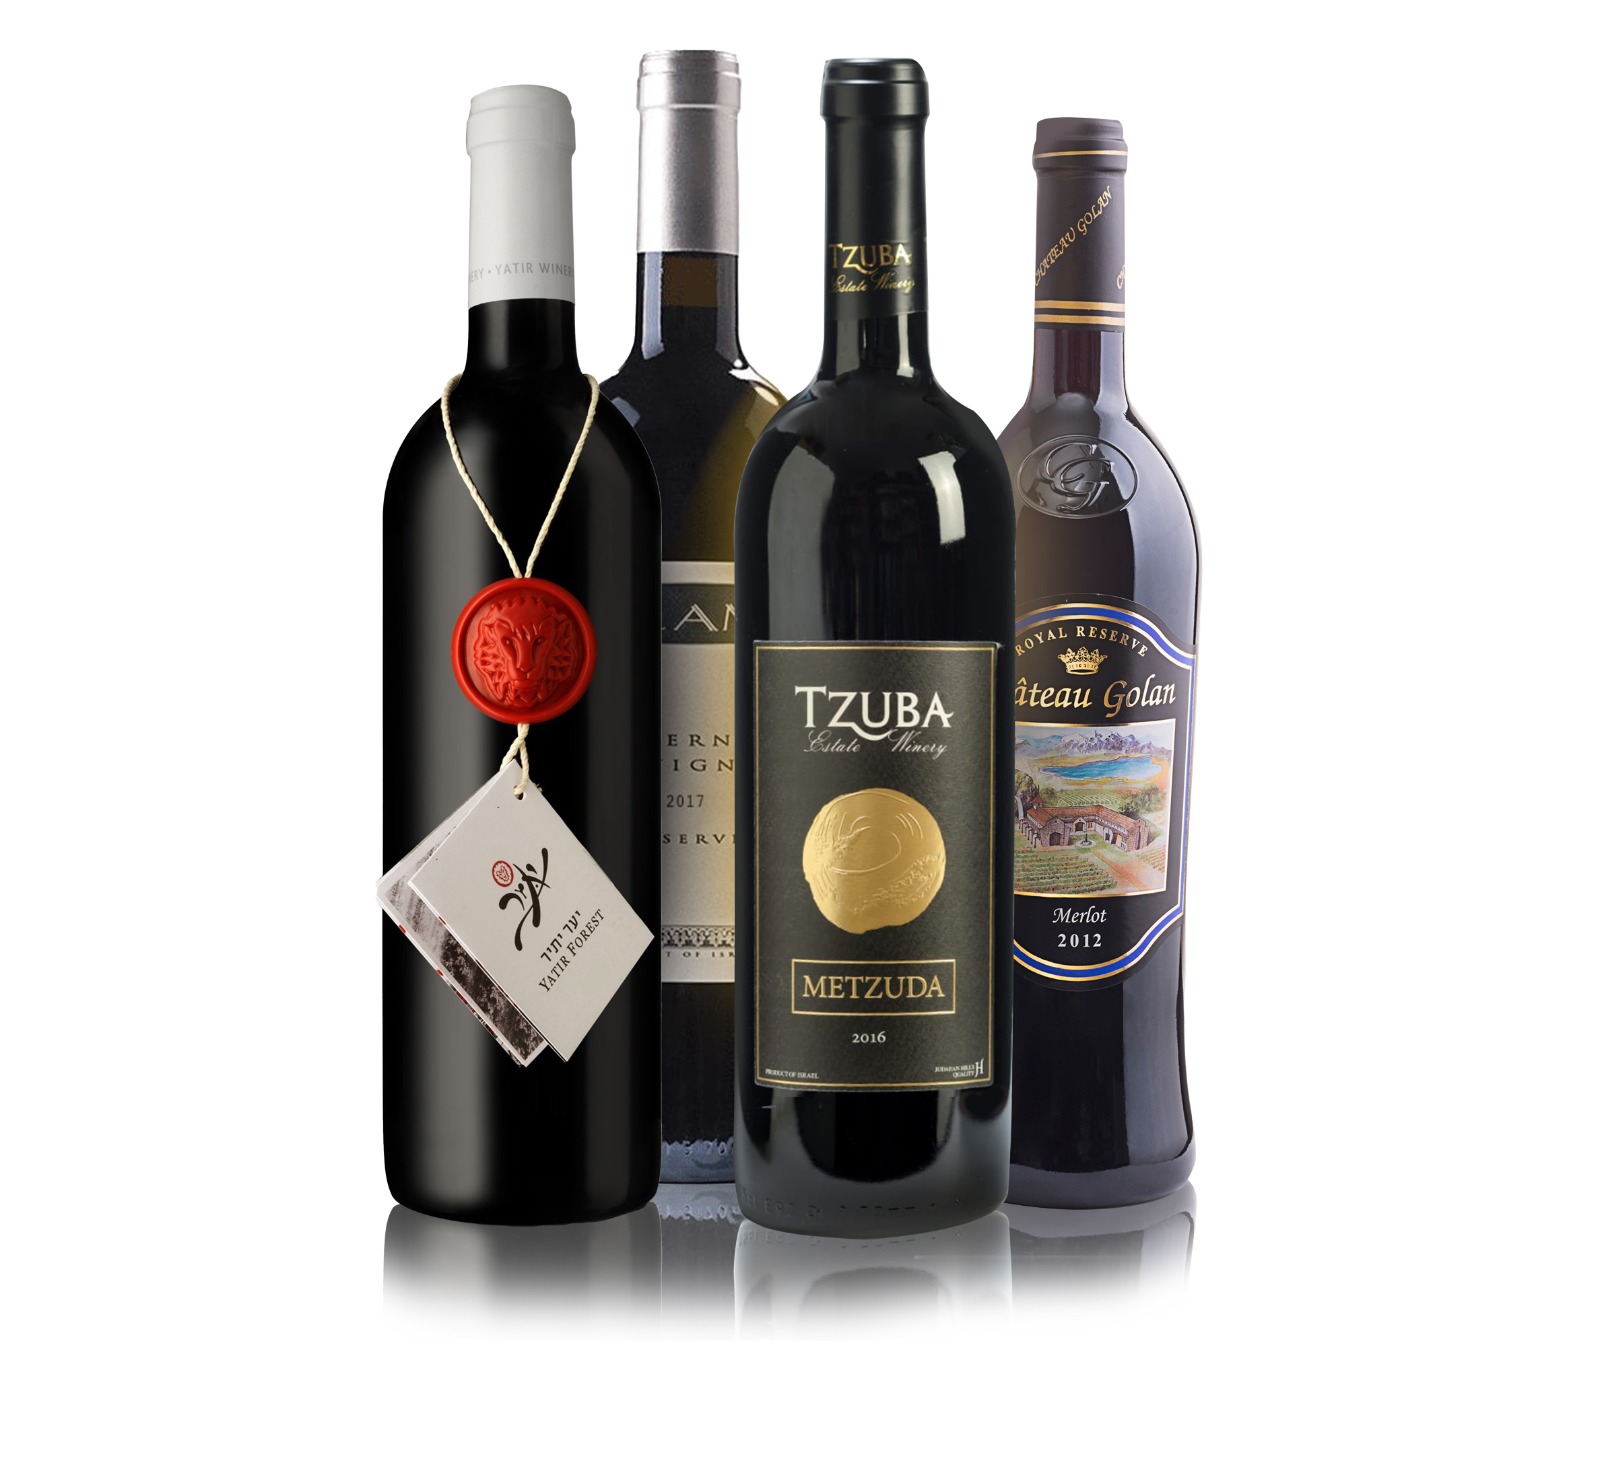 שולחן החג של רשת חינאווי Wine & More: מבצעי יין ואלכוהול במחירים חסרי תקדים, לצד מארזי שי יוקרתיים בהרכבה אישית